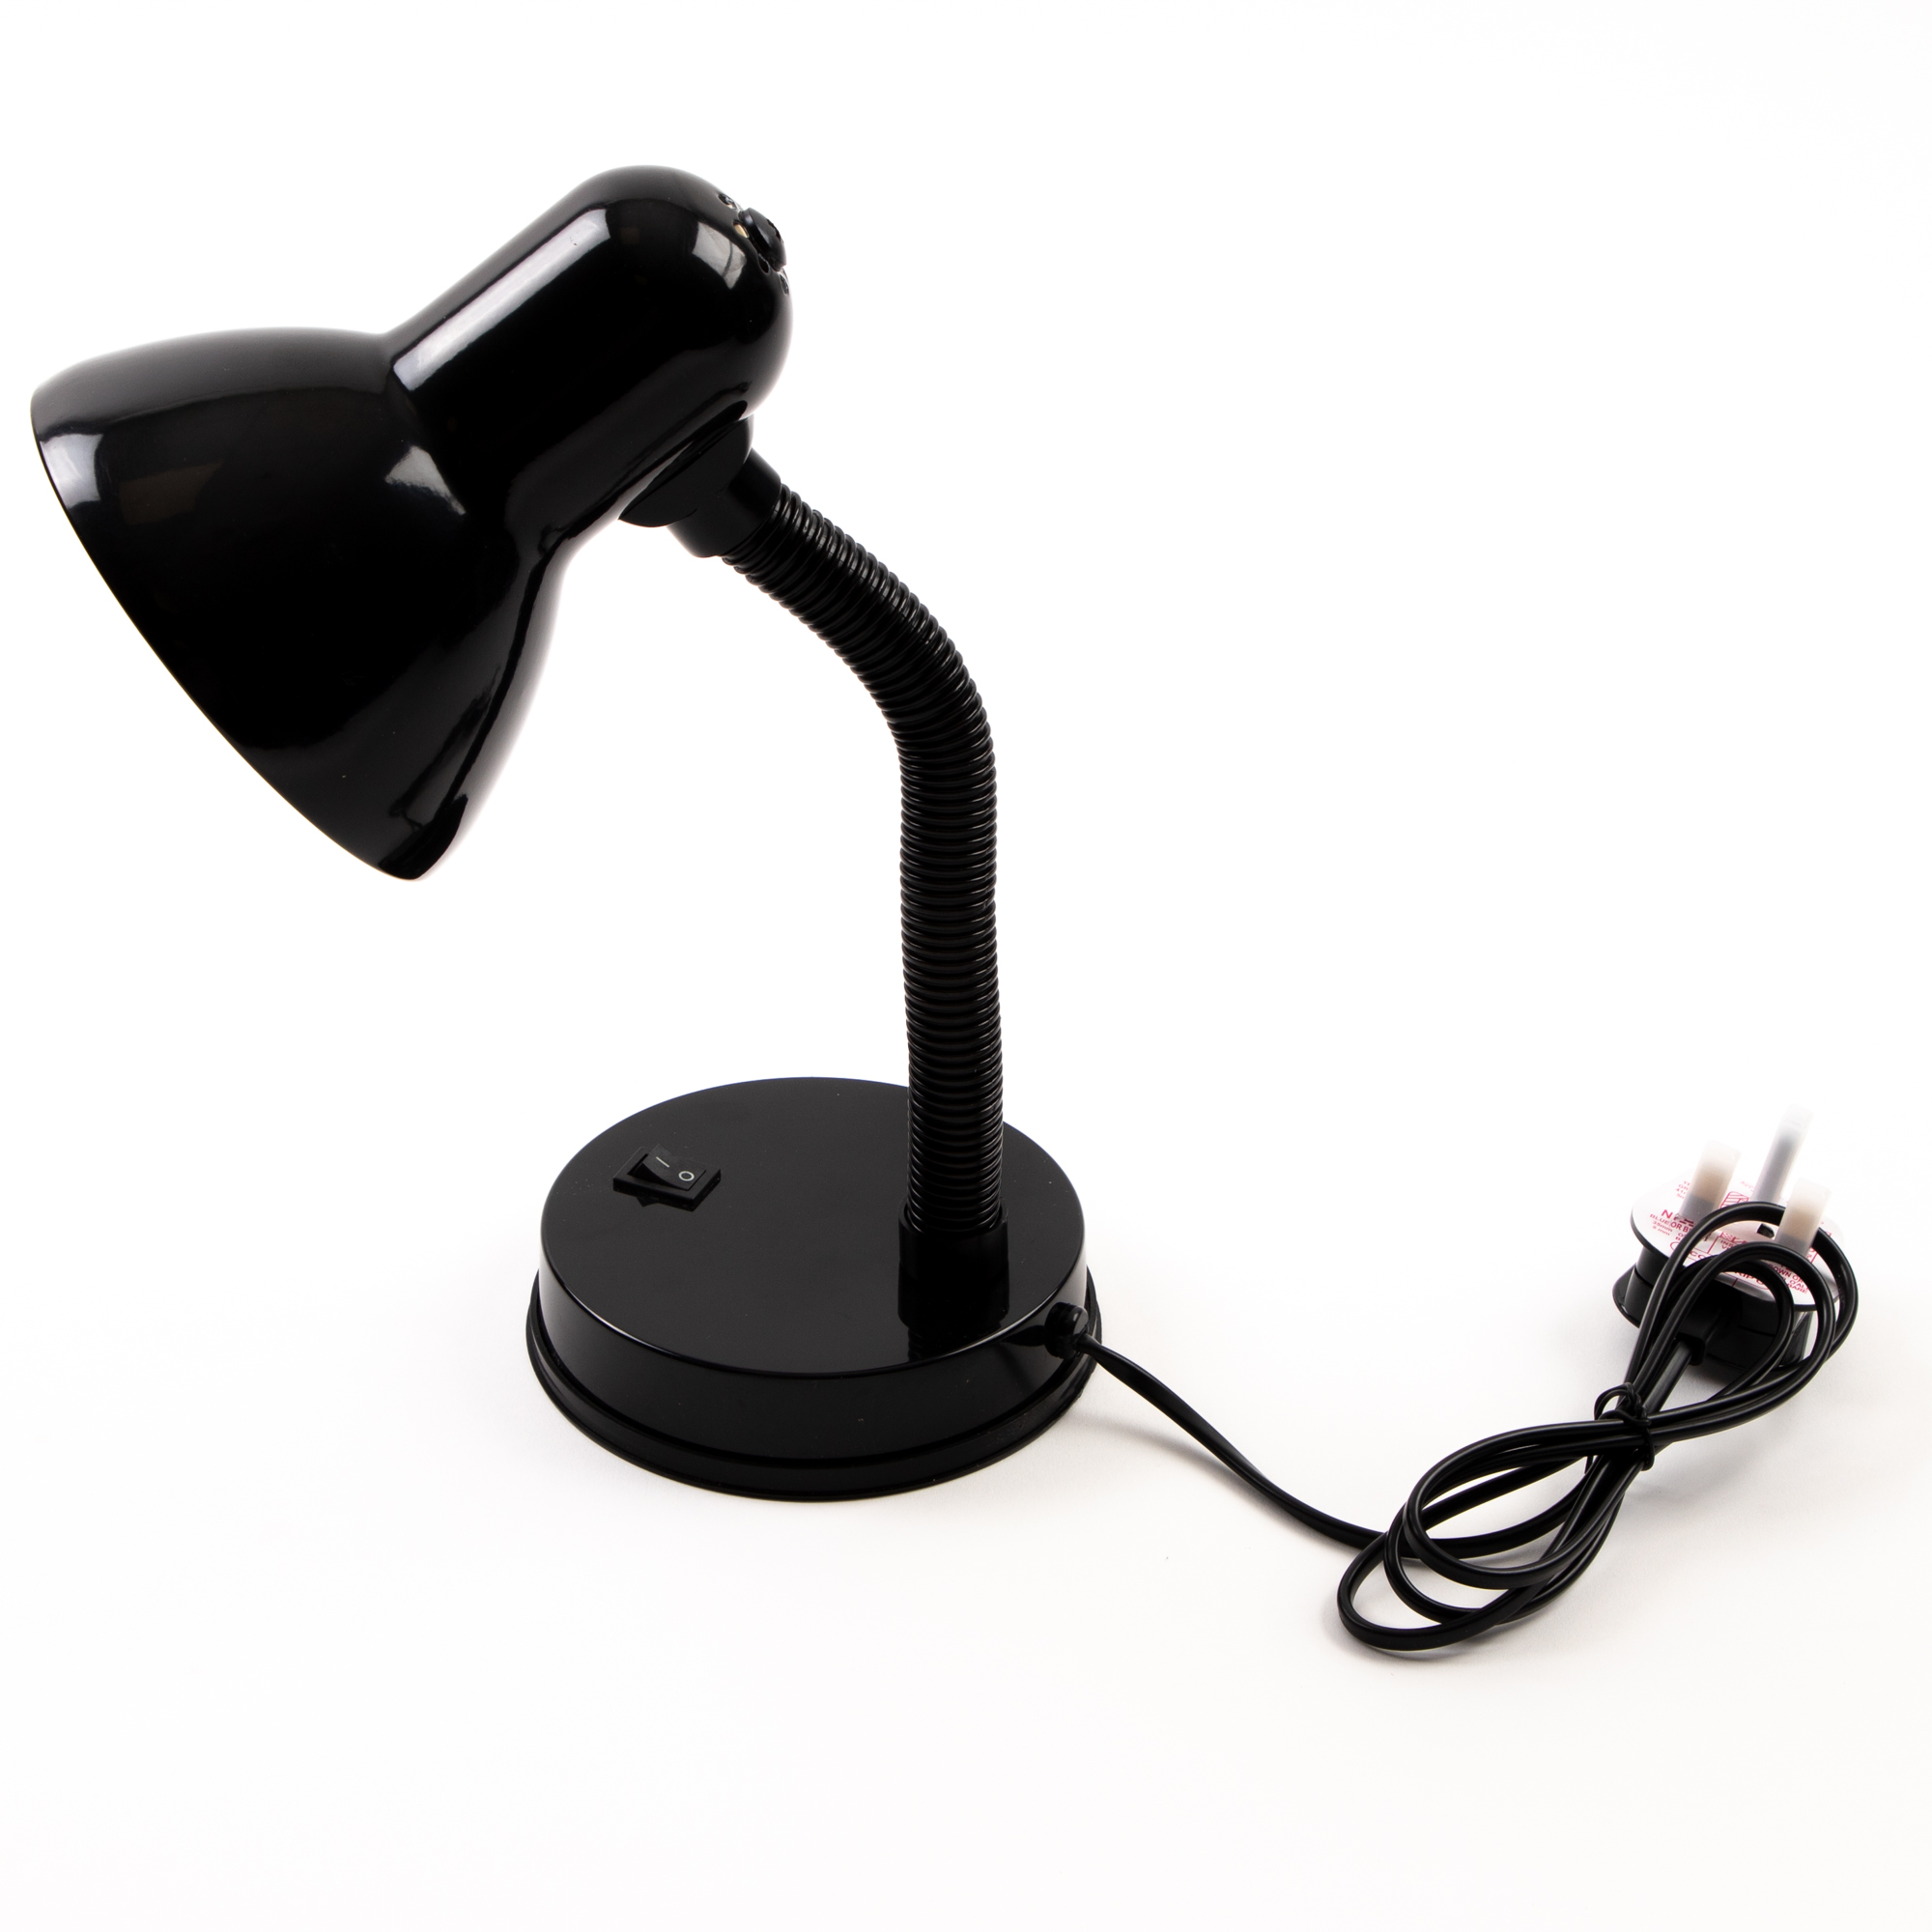 G1196688 - Flexible Desk Lamp